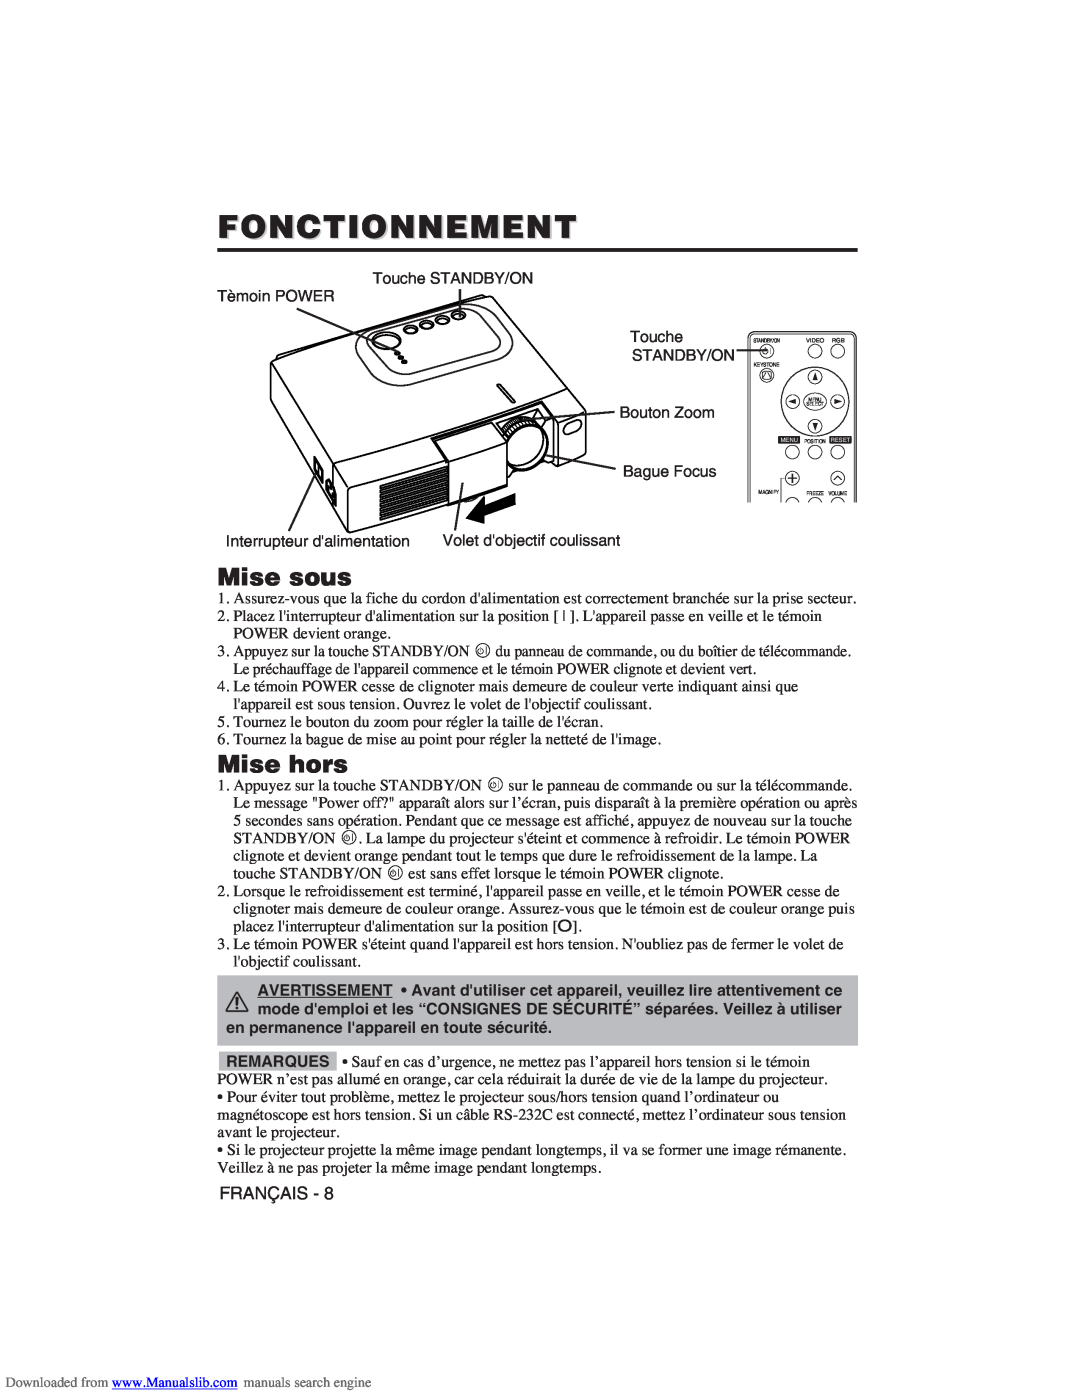 Hitachi CP-X275W user manual Fonctionnement, Mise sous, Mise hors 